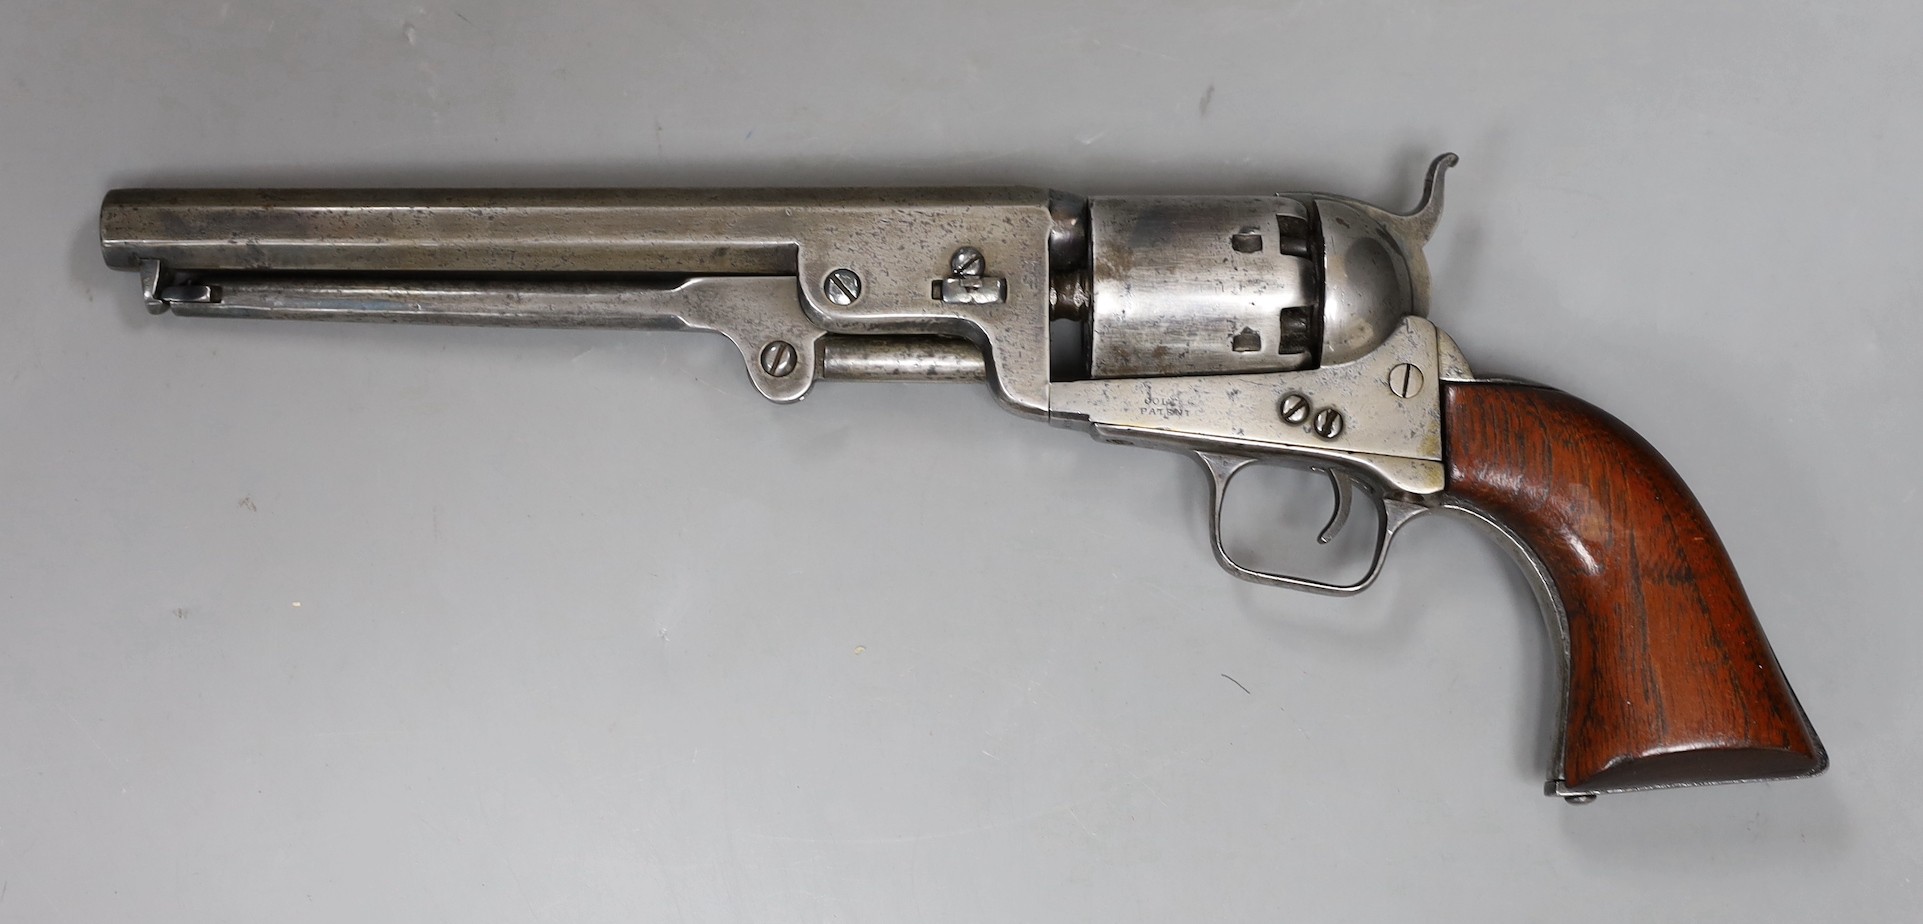 A Colt Patent revolver, under barrel loading, six shot, 7.5 inch octagonal barrel